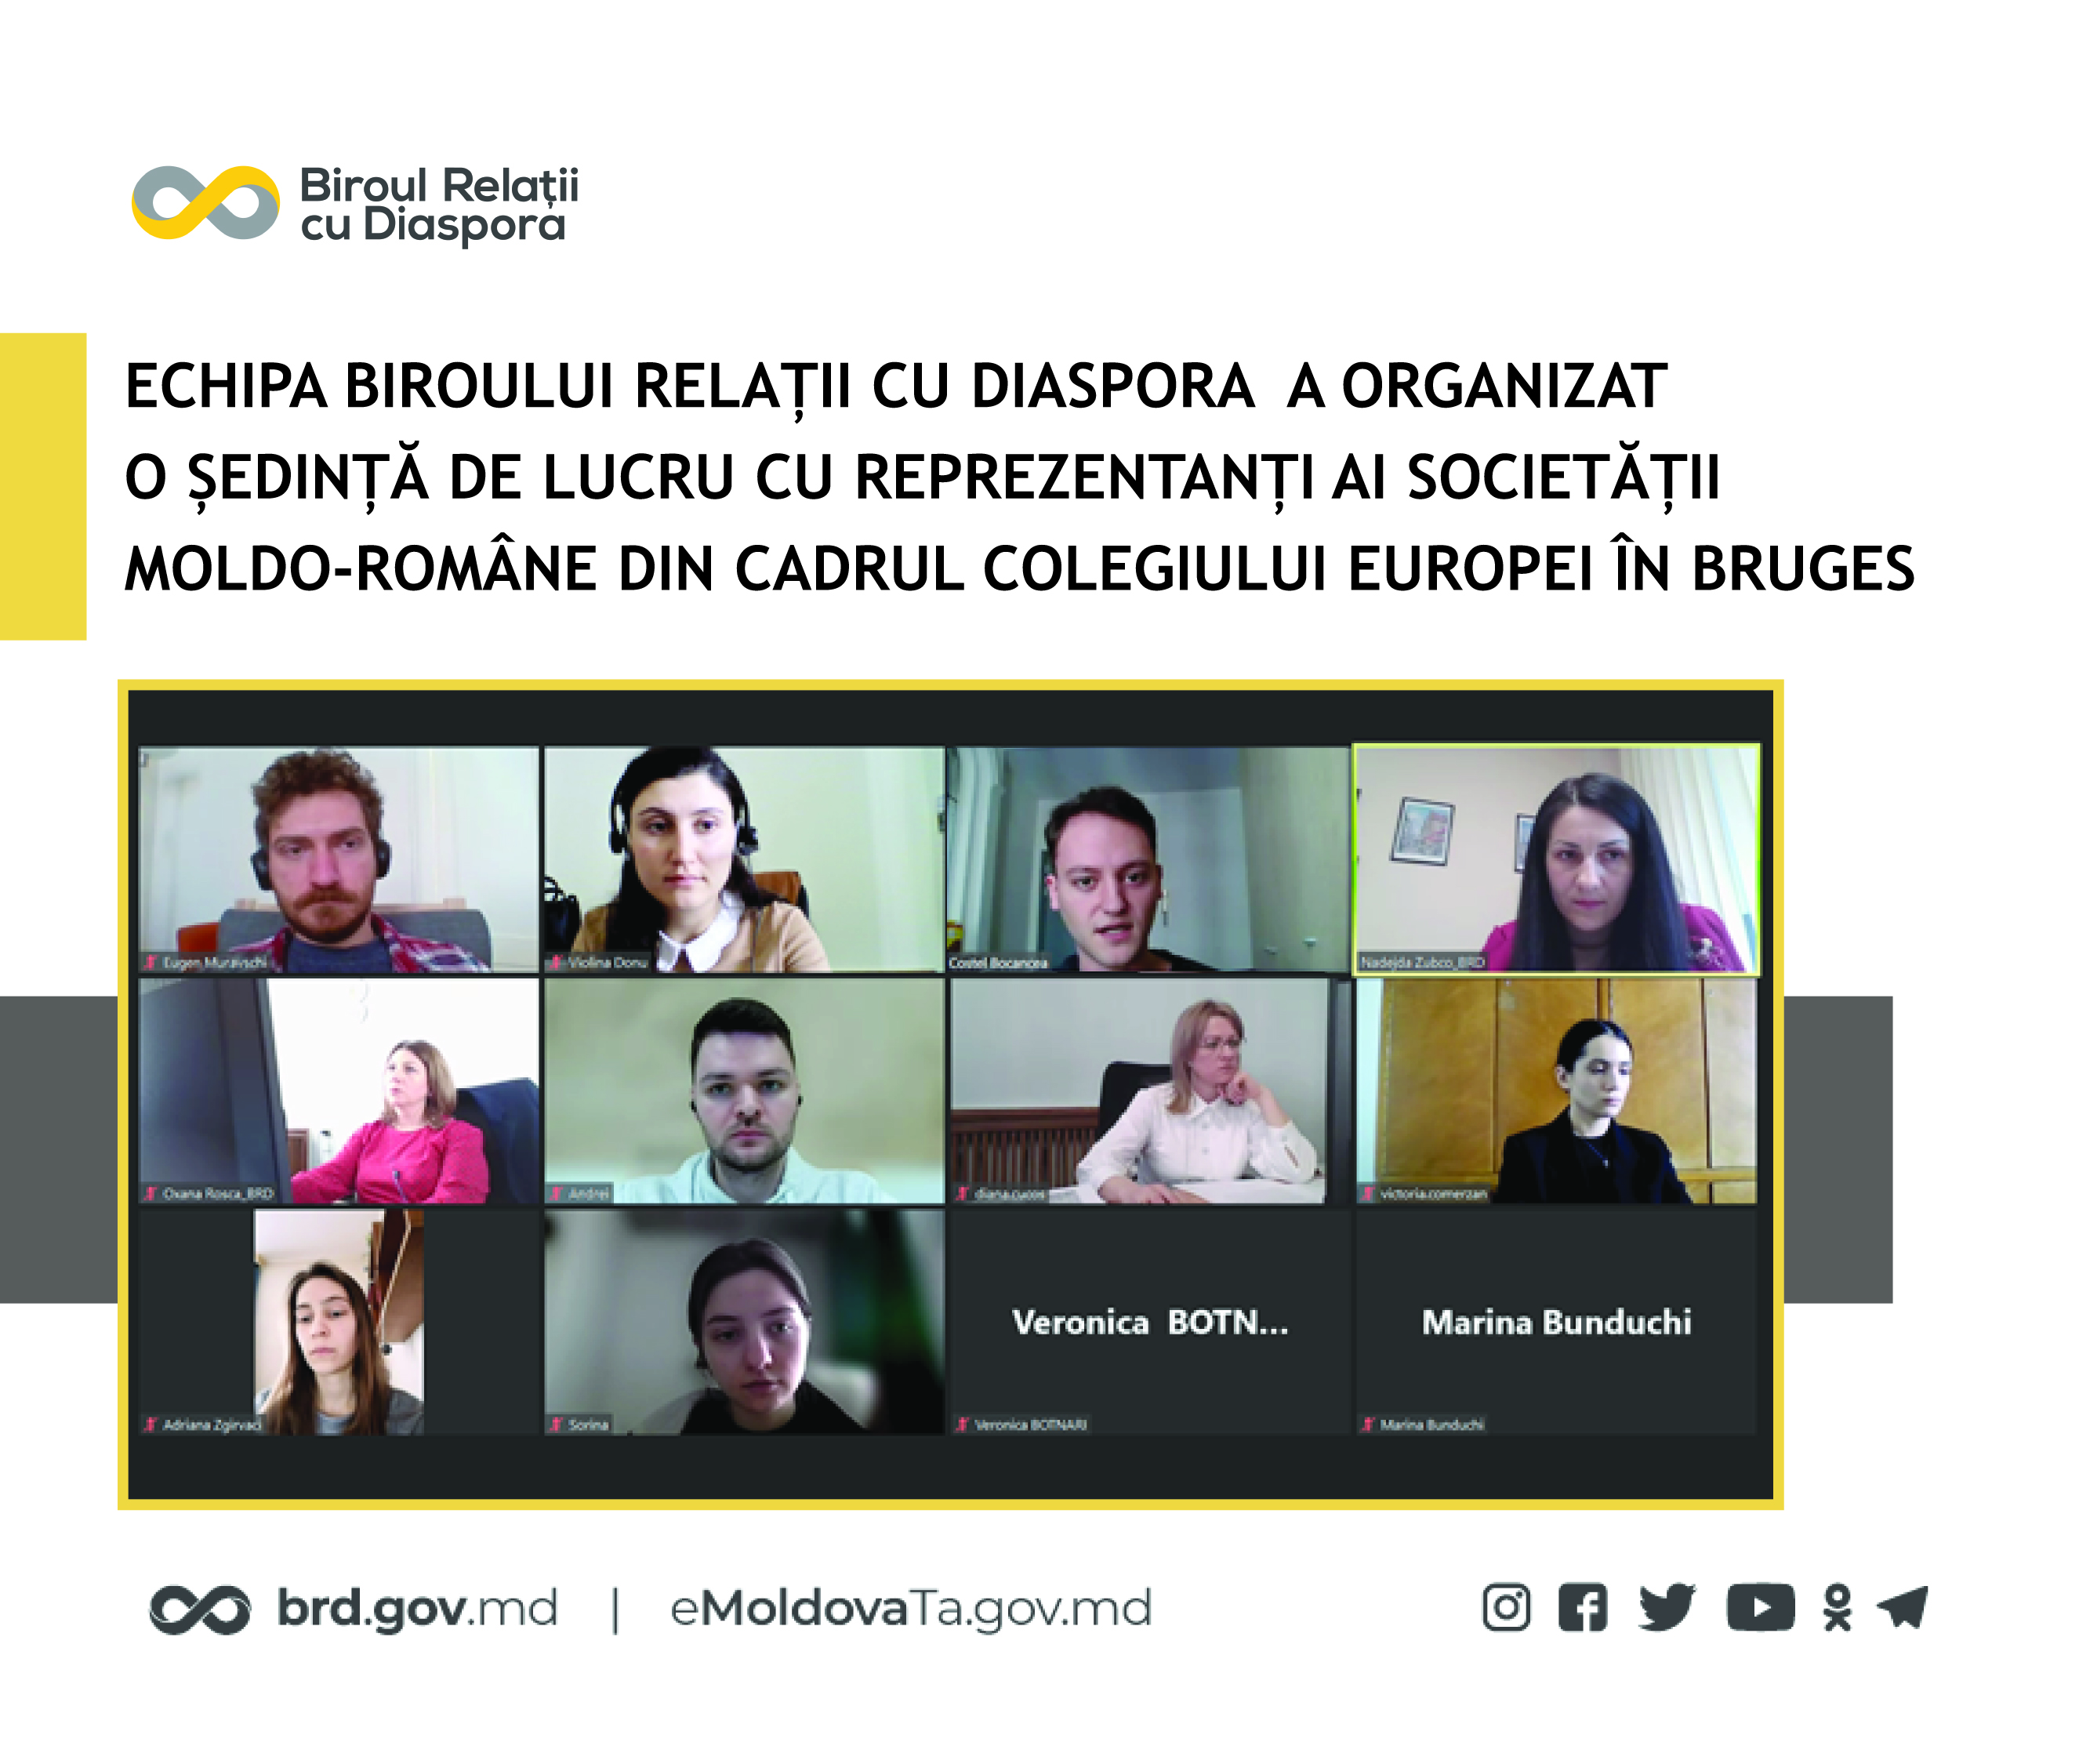 Echipa Biroului relații cu diaspora a organizat o ședință de lucru cu reprezentanți ai Societății Moldo-Române din cadrul Colegiului Europei în Bruges